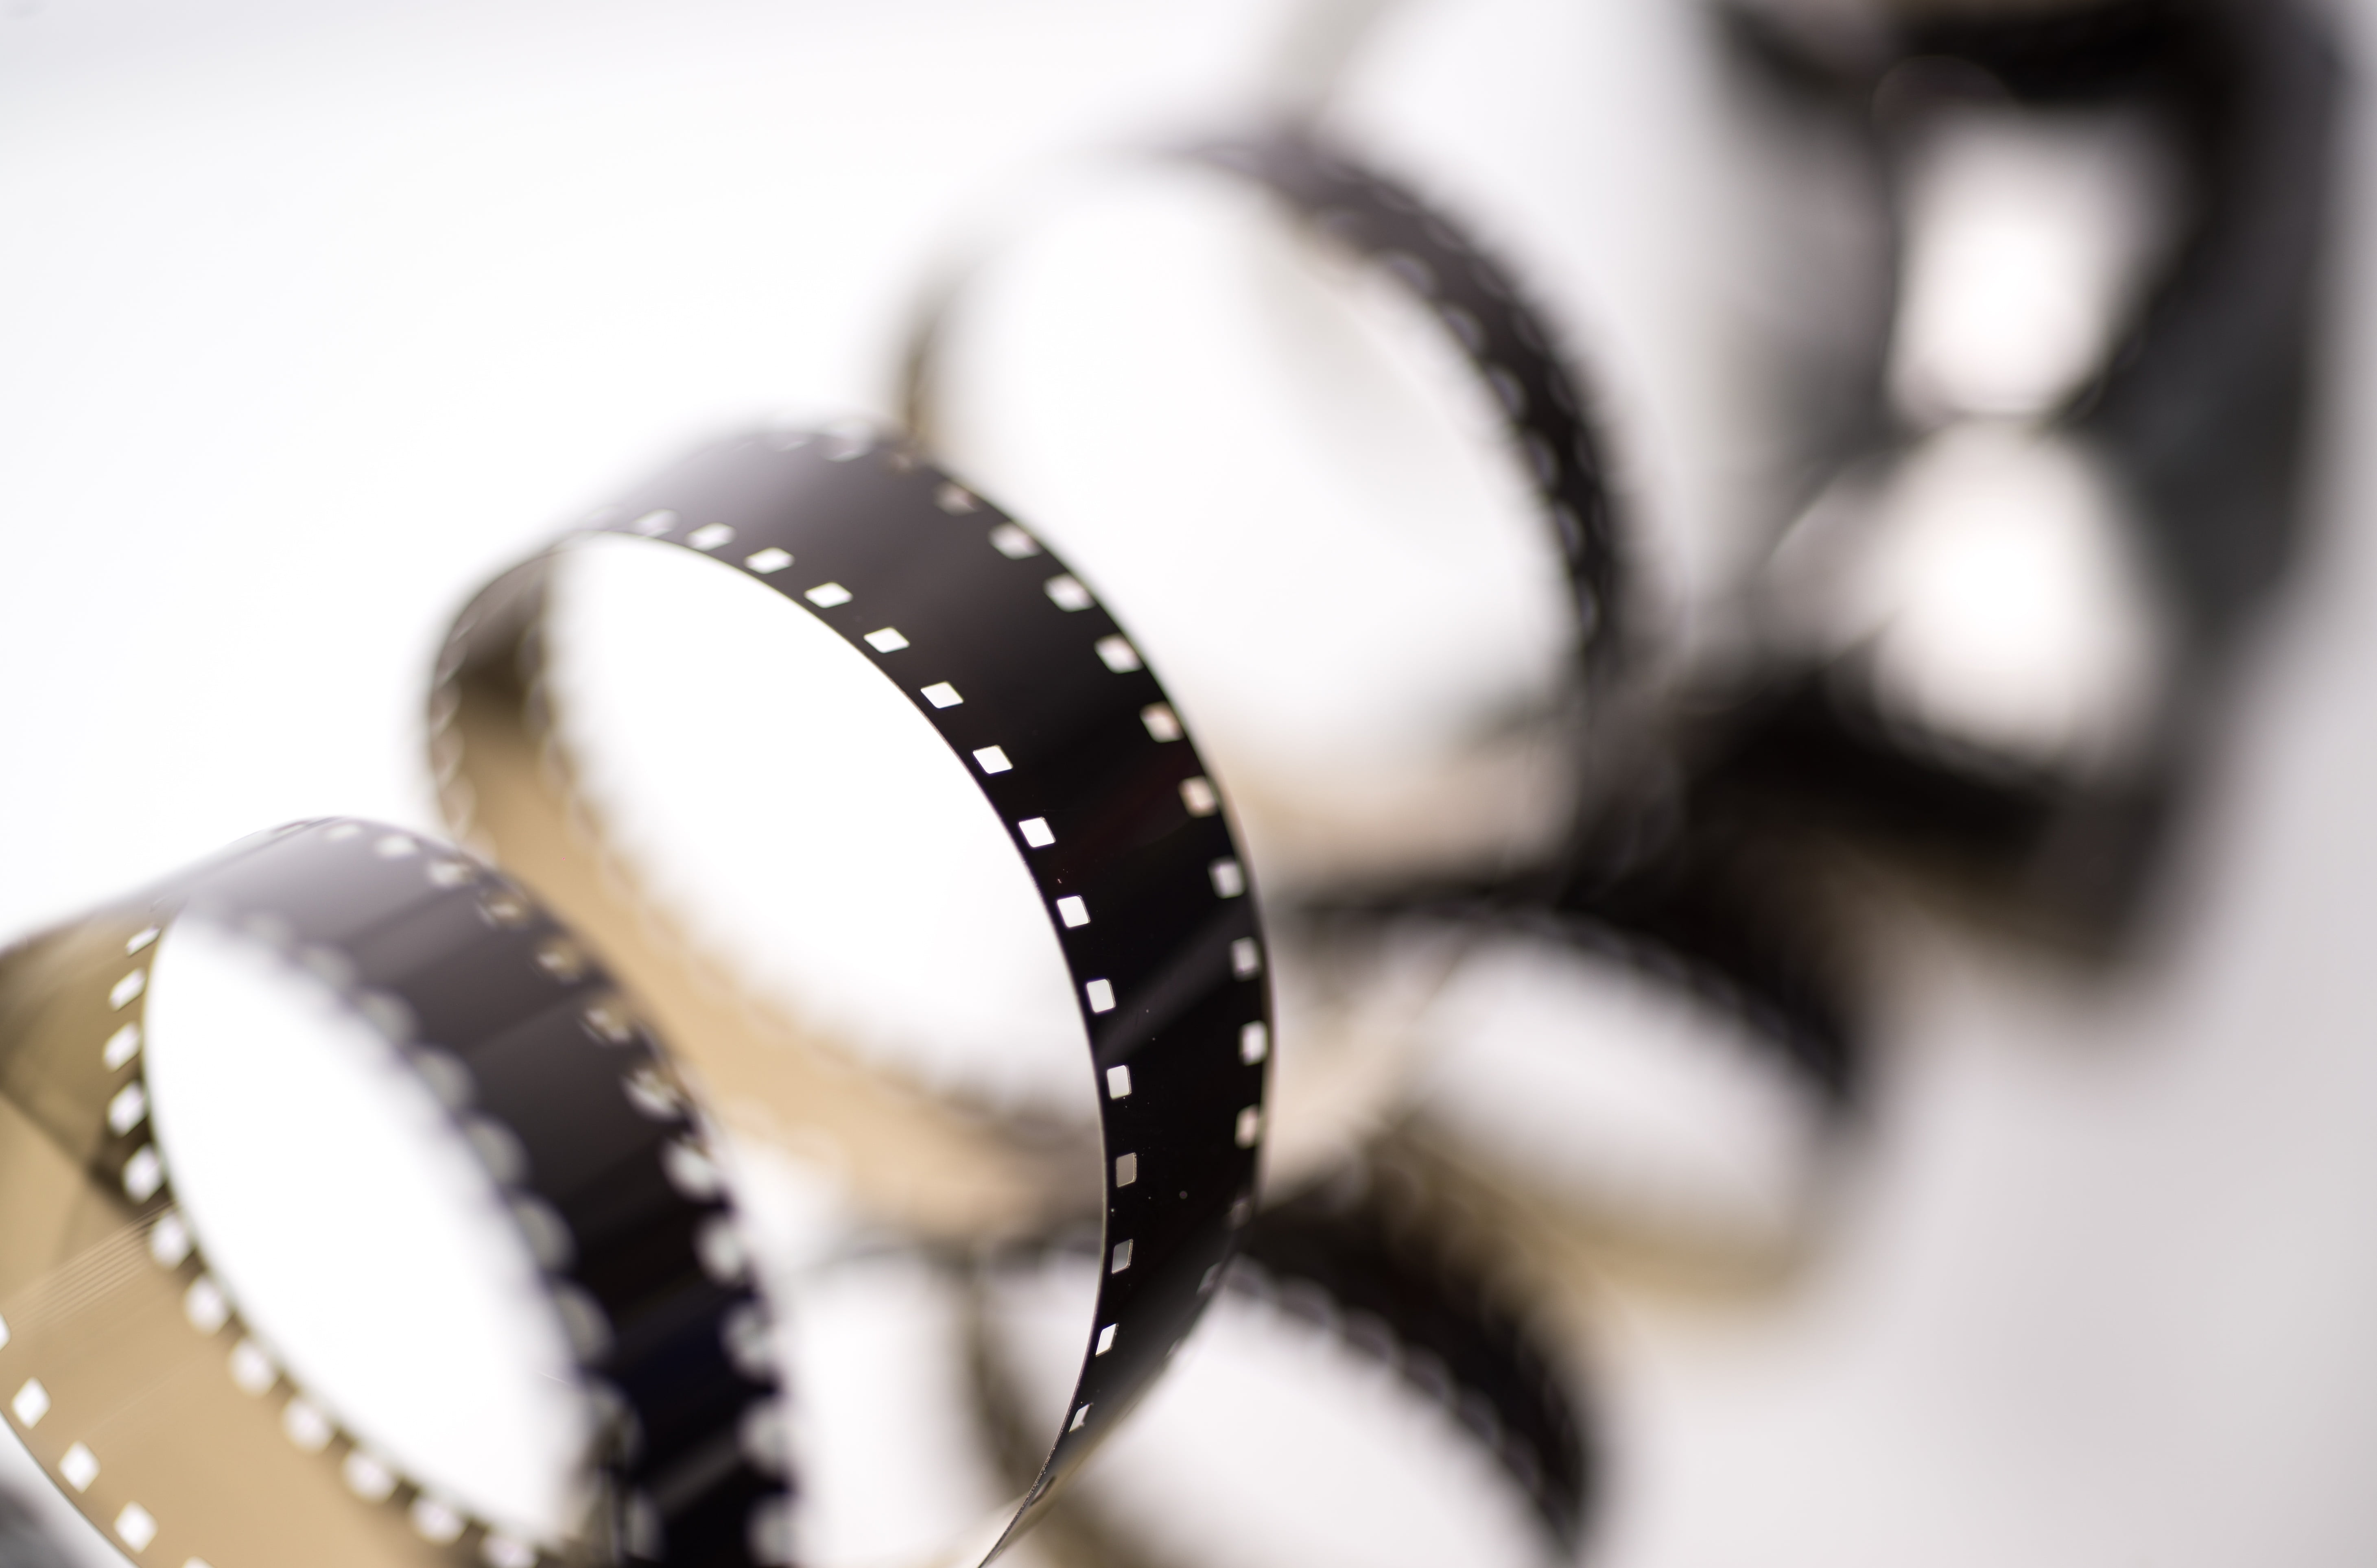 Premium Photo  Cinema film reel or filmstrip close up picture